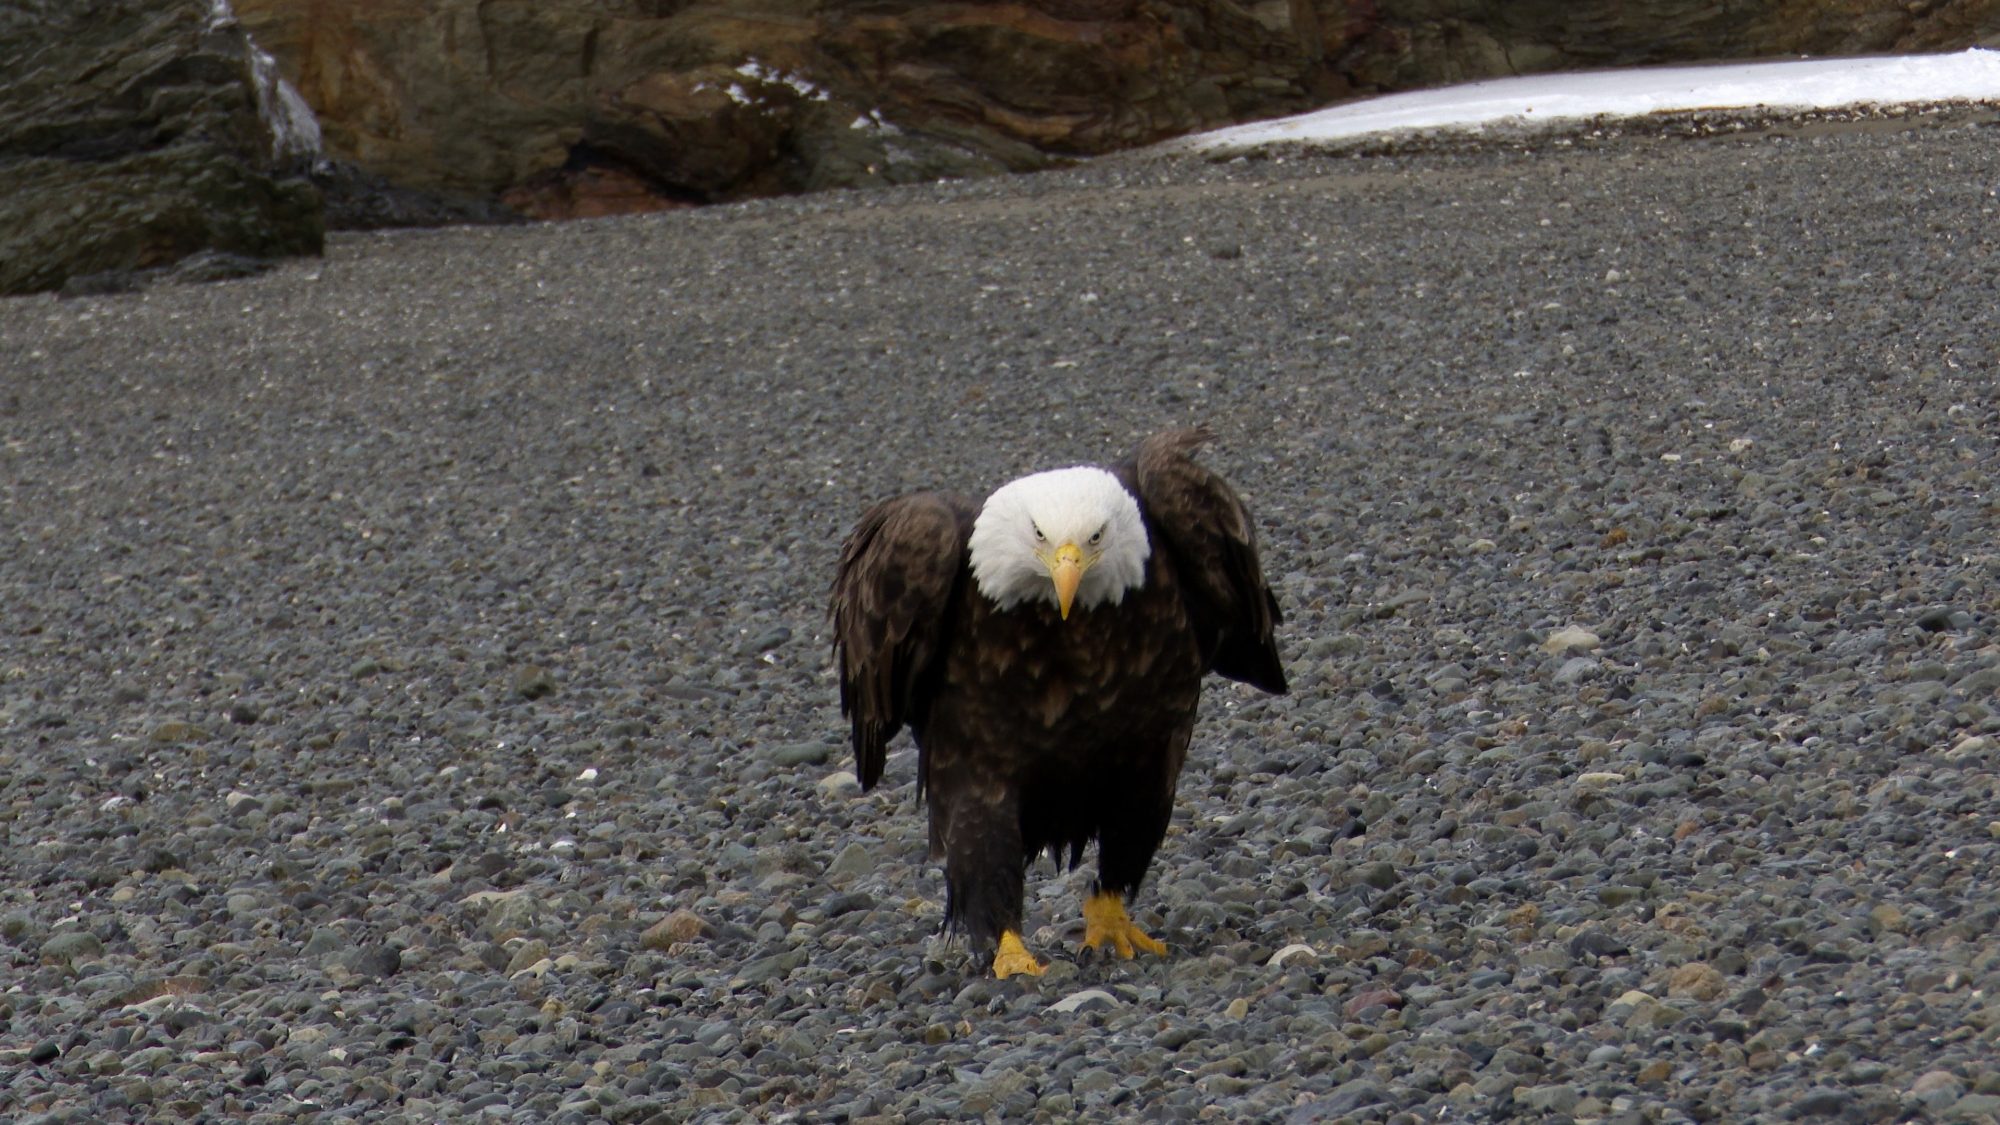 Bald Eagles on the beach – Alaska 2020